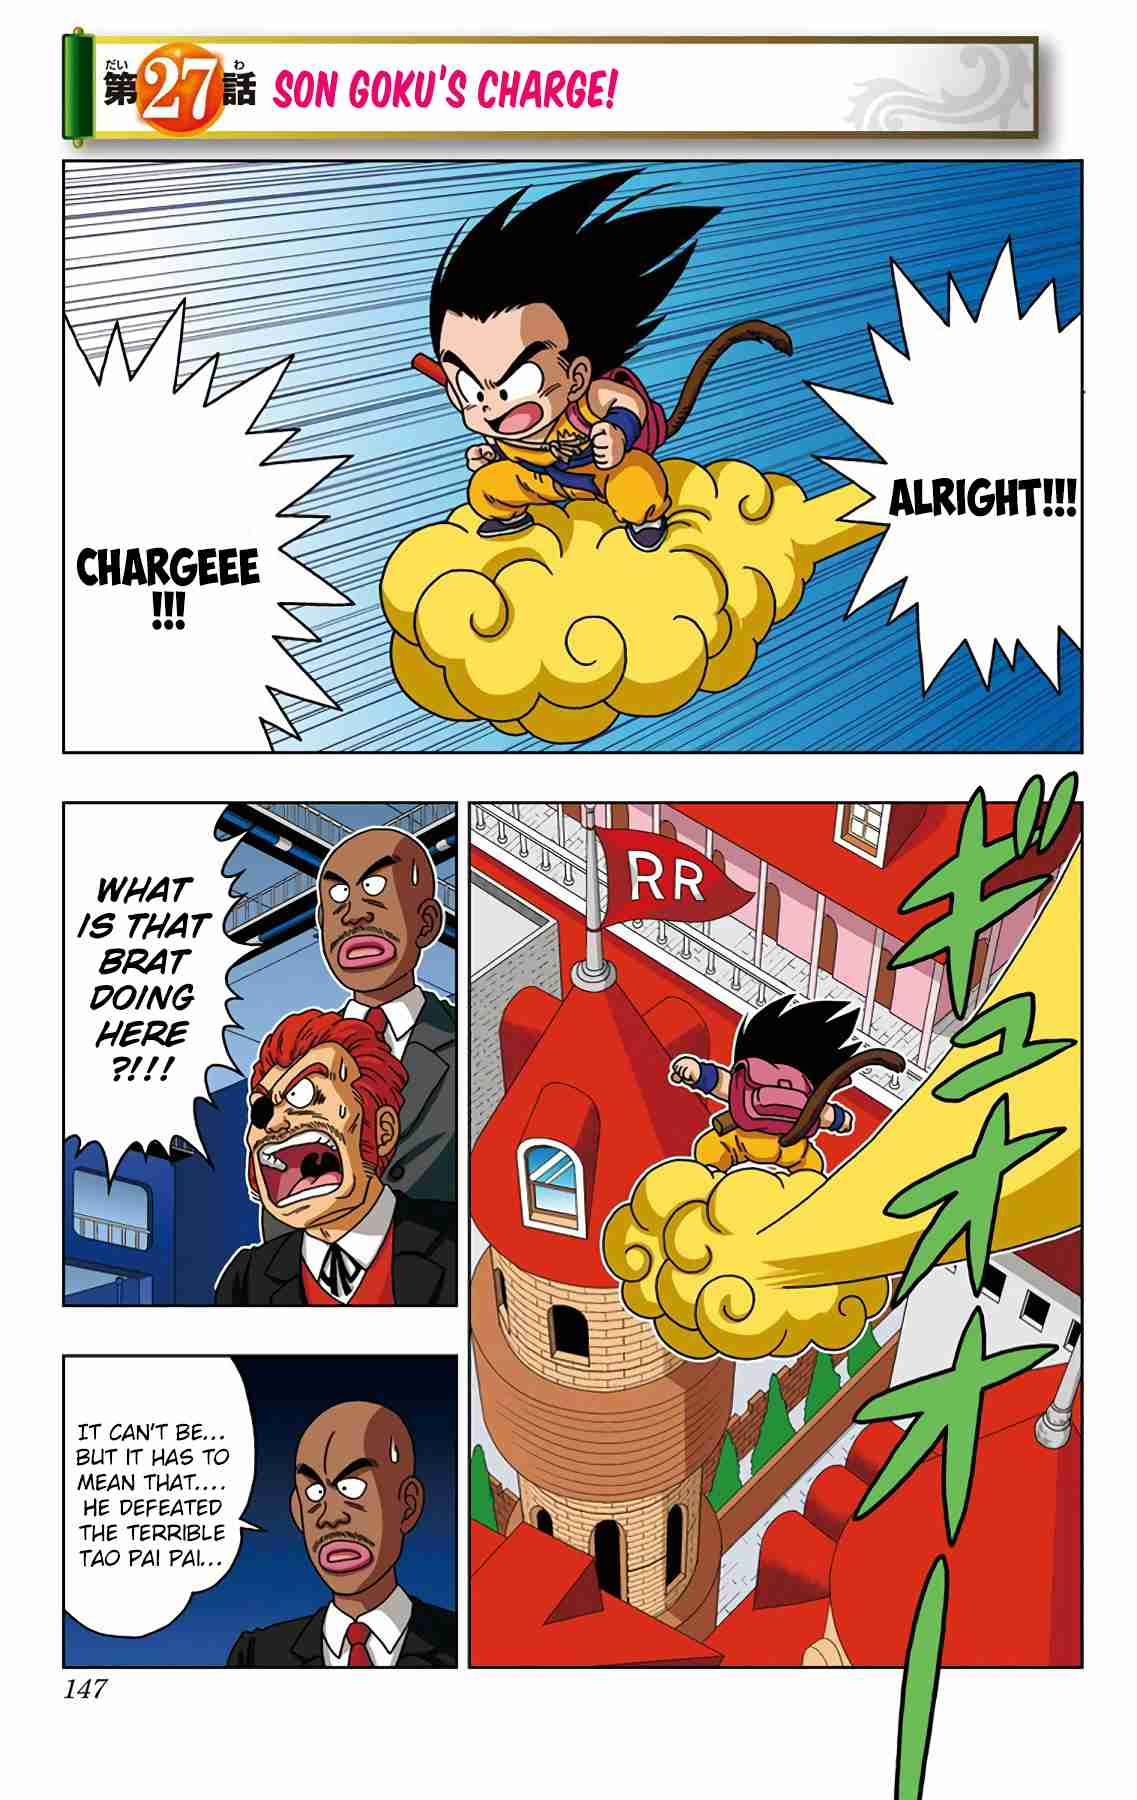 Dragon Ball SD Vol. 3 Ch. 27 Son Goku's Charge!